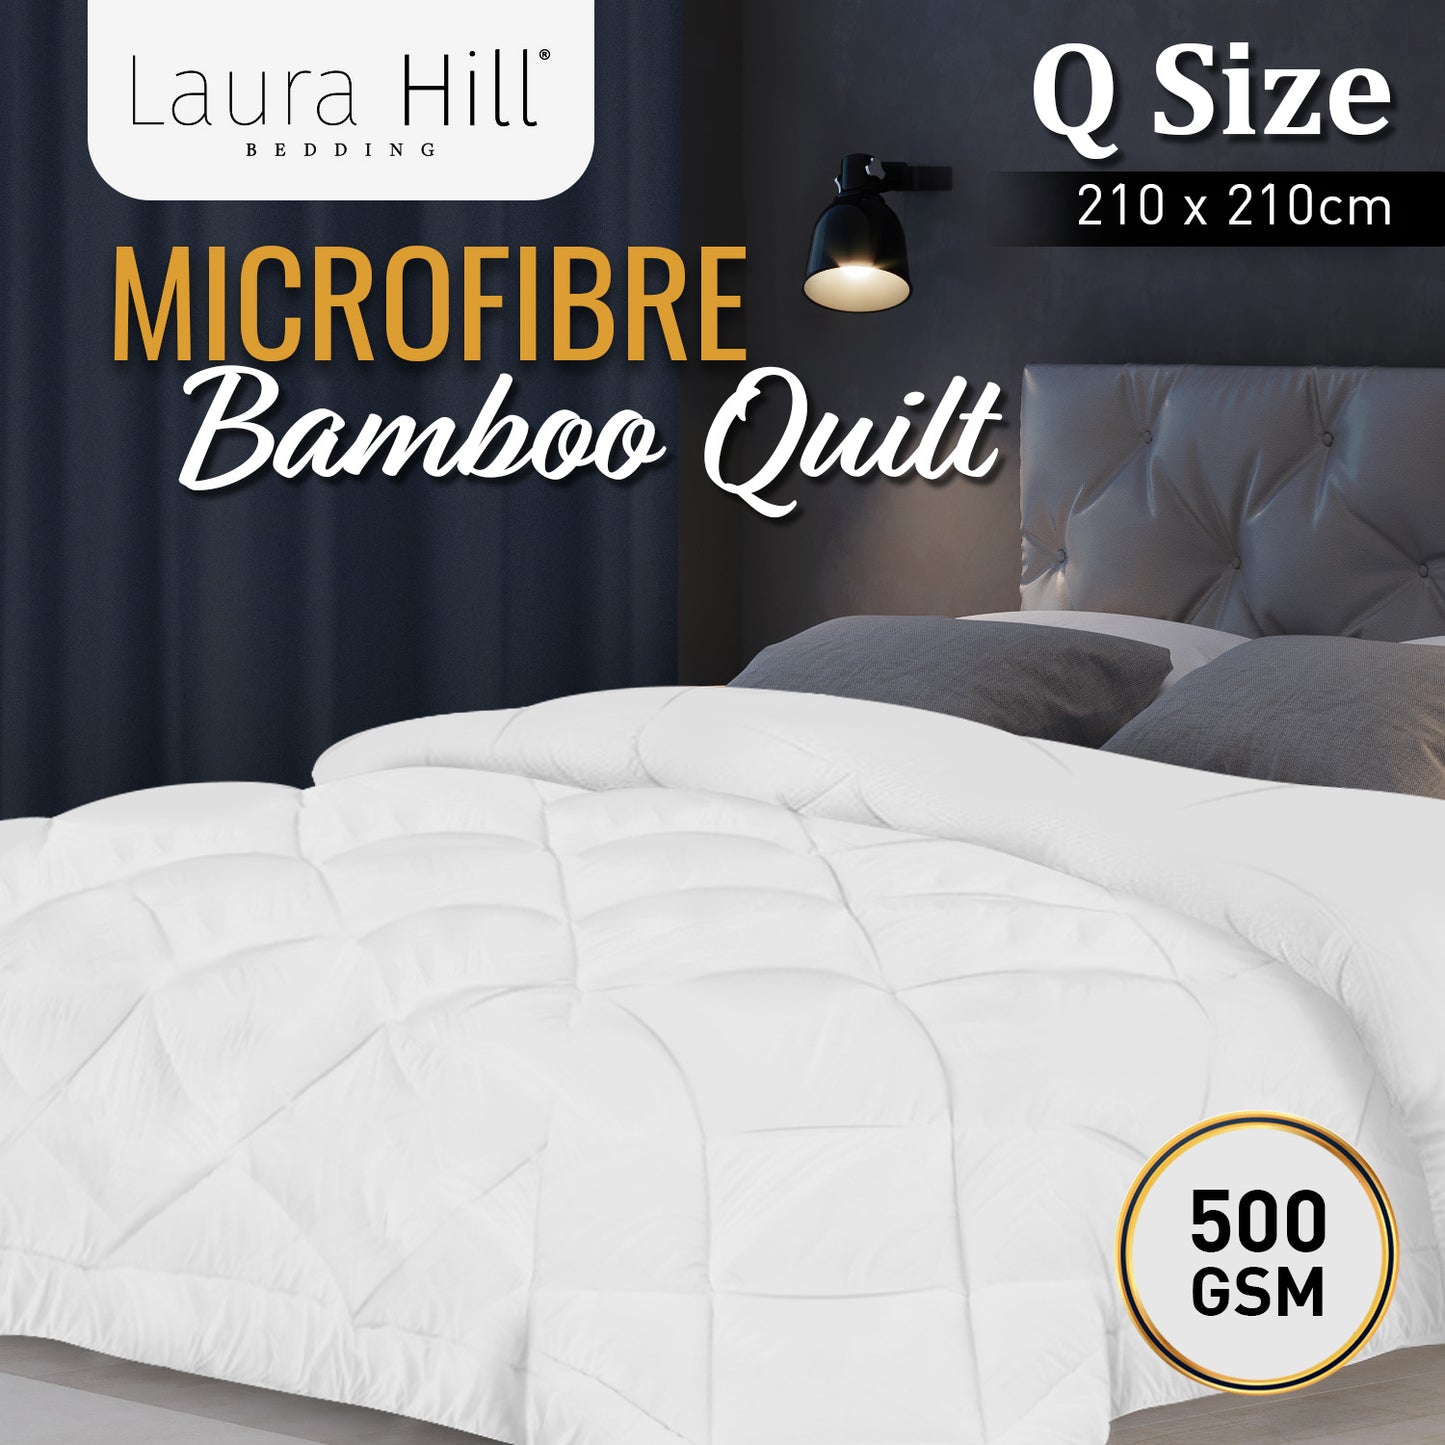 Laura Hill 500GSM Microfibre Bamboo Quilt Comforter Doona - Queen